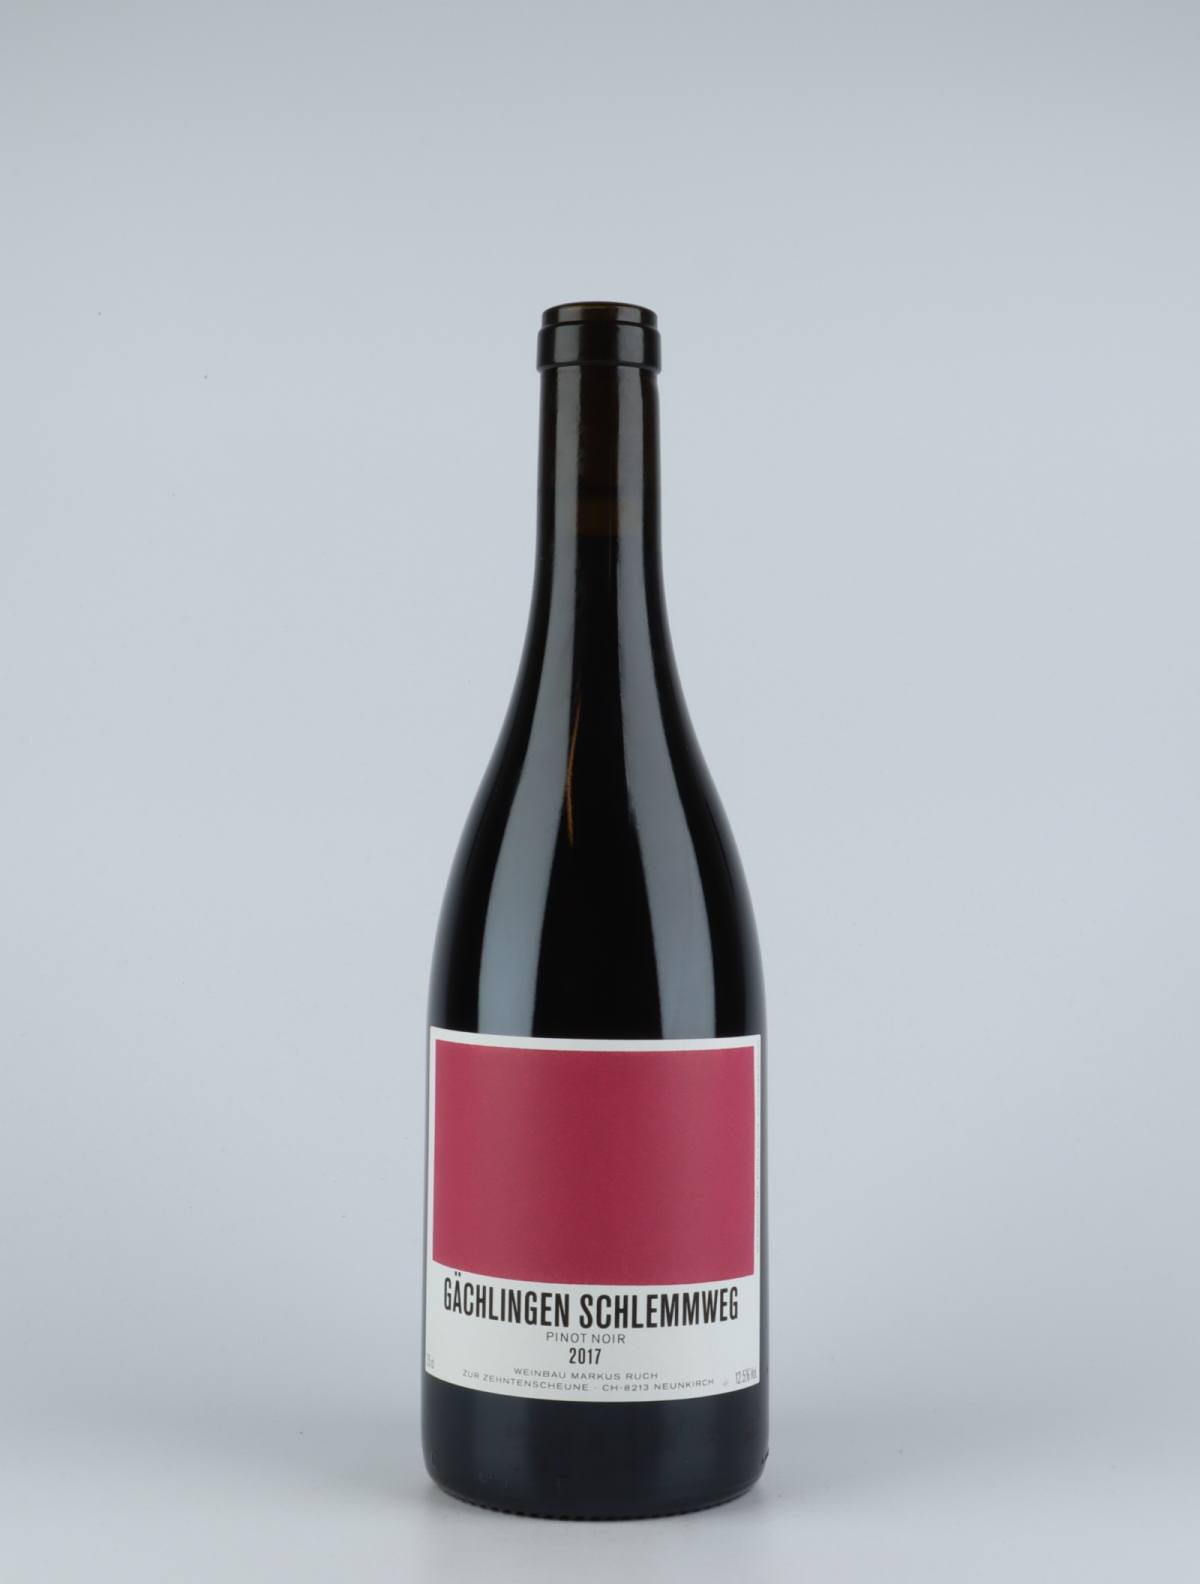 A bottle 2017 Gächlingen Schlemmweg Red wine from Markus Ruch, Schaffhausen in Switzerland